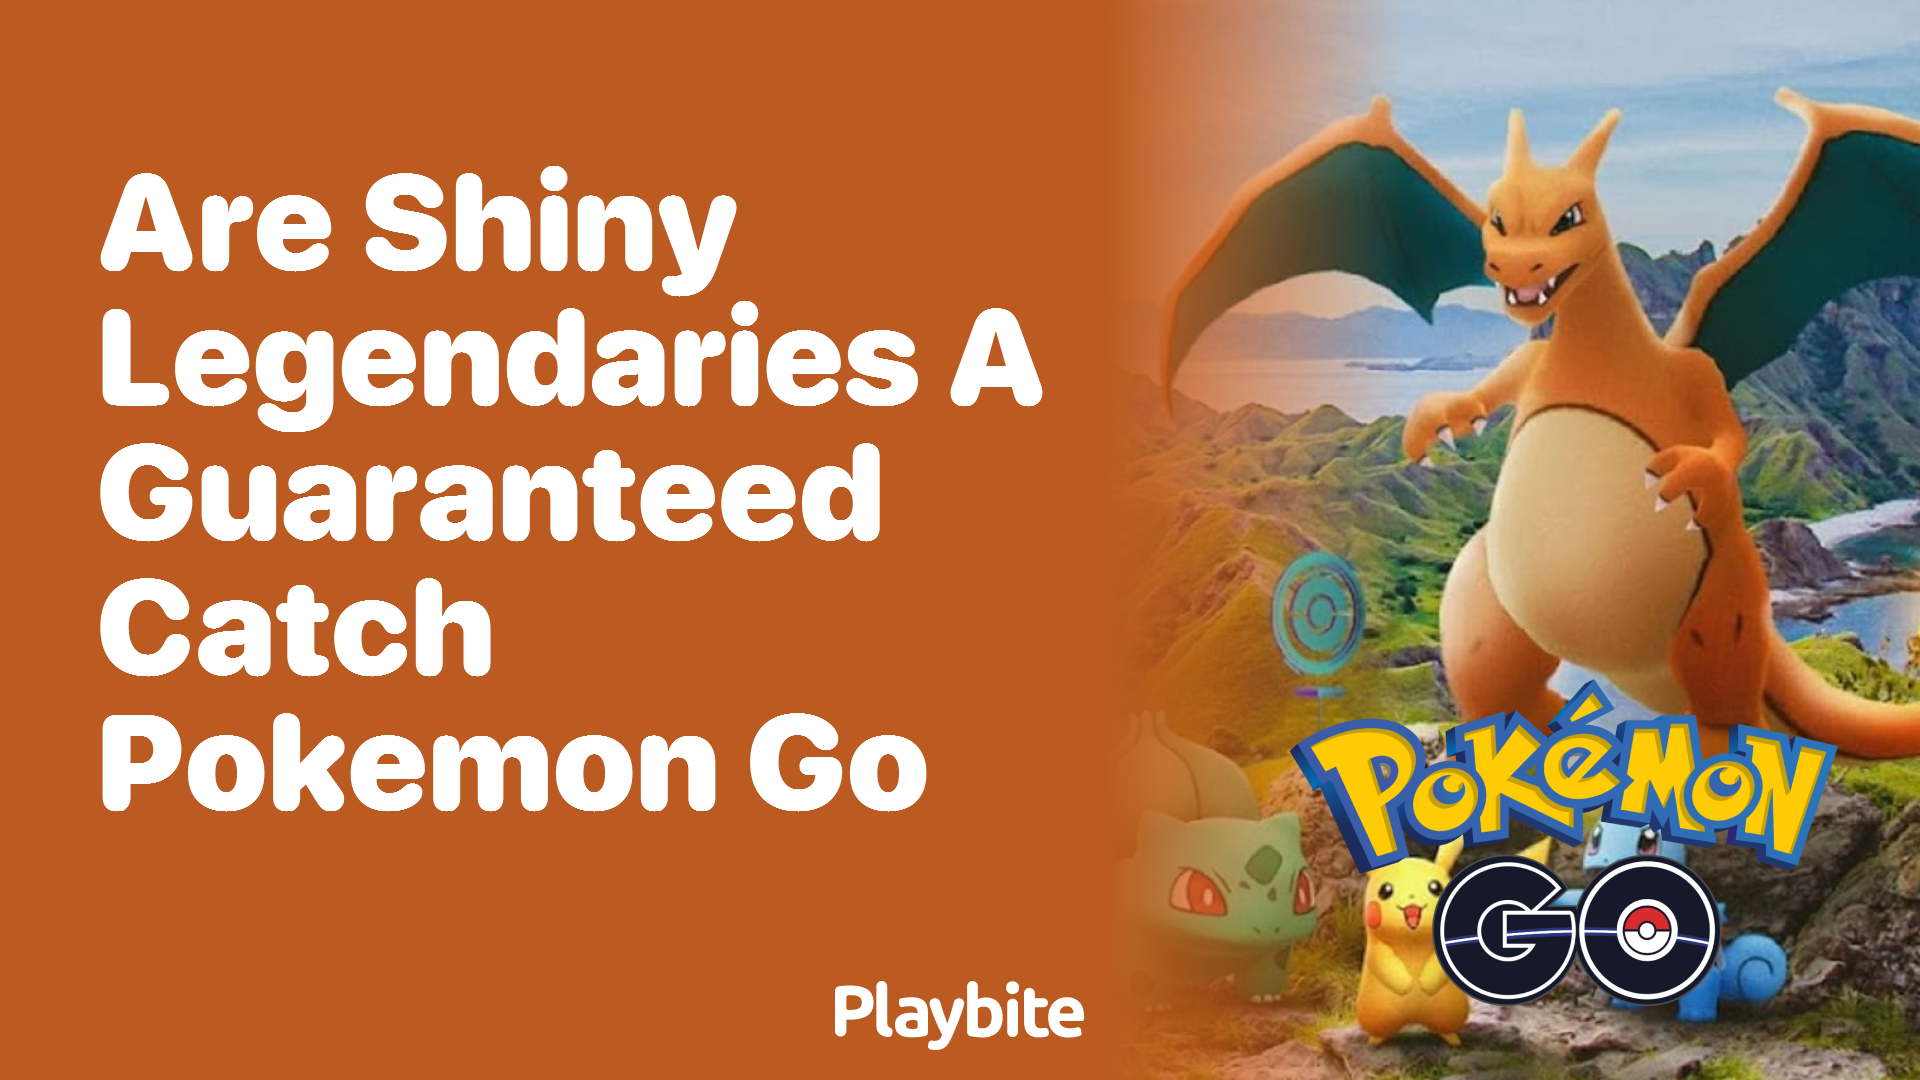 Are Shiny Legendaries a Guaranteed Catch in Pokemon GO?